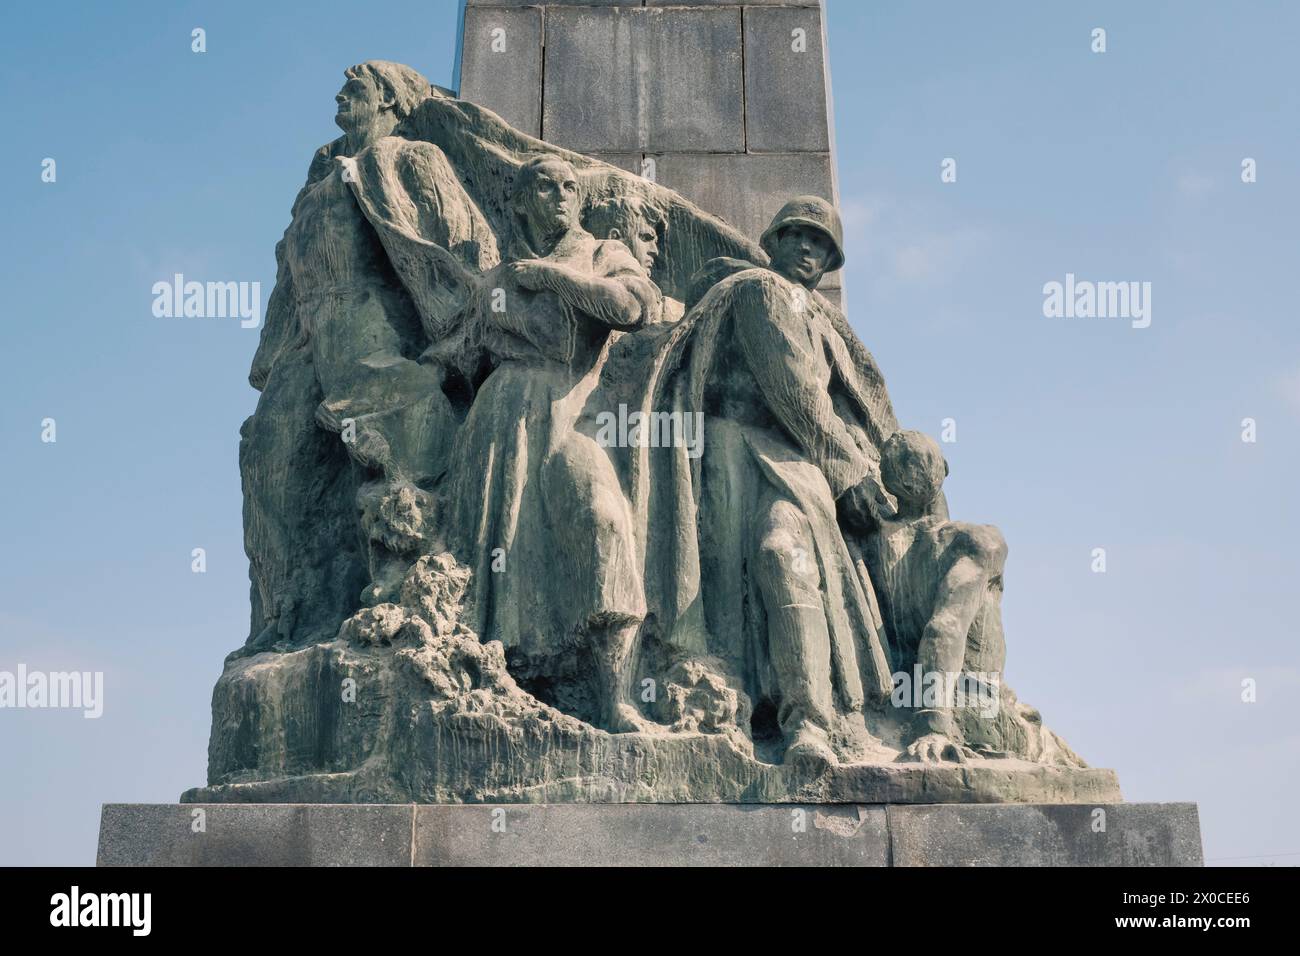 Monumento agli eroi della colonizzazione leninista. Chisinau. Capitale della Repubblica moldova. Patricia Huchot-Boissier / Collectif DyF Foto Stock